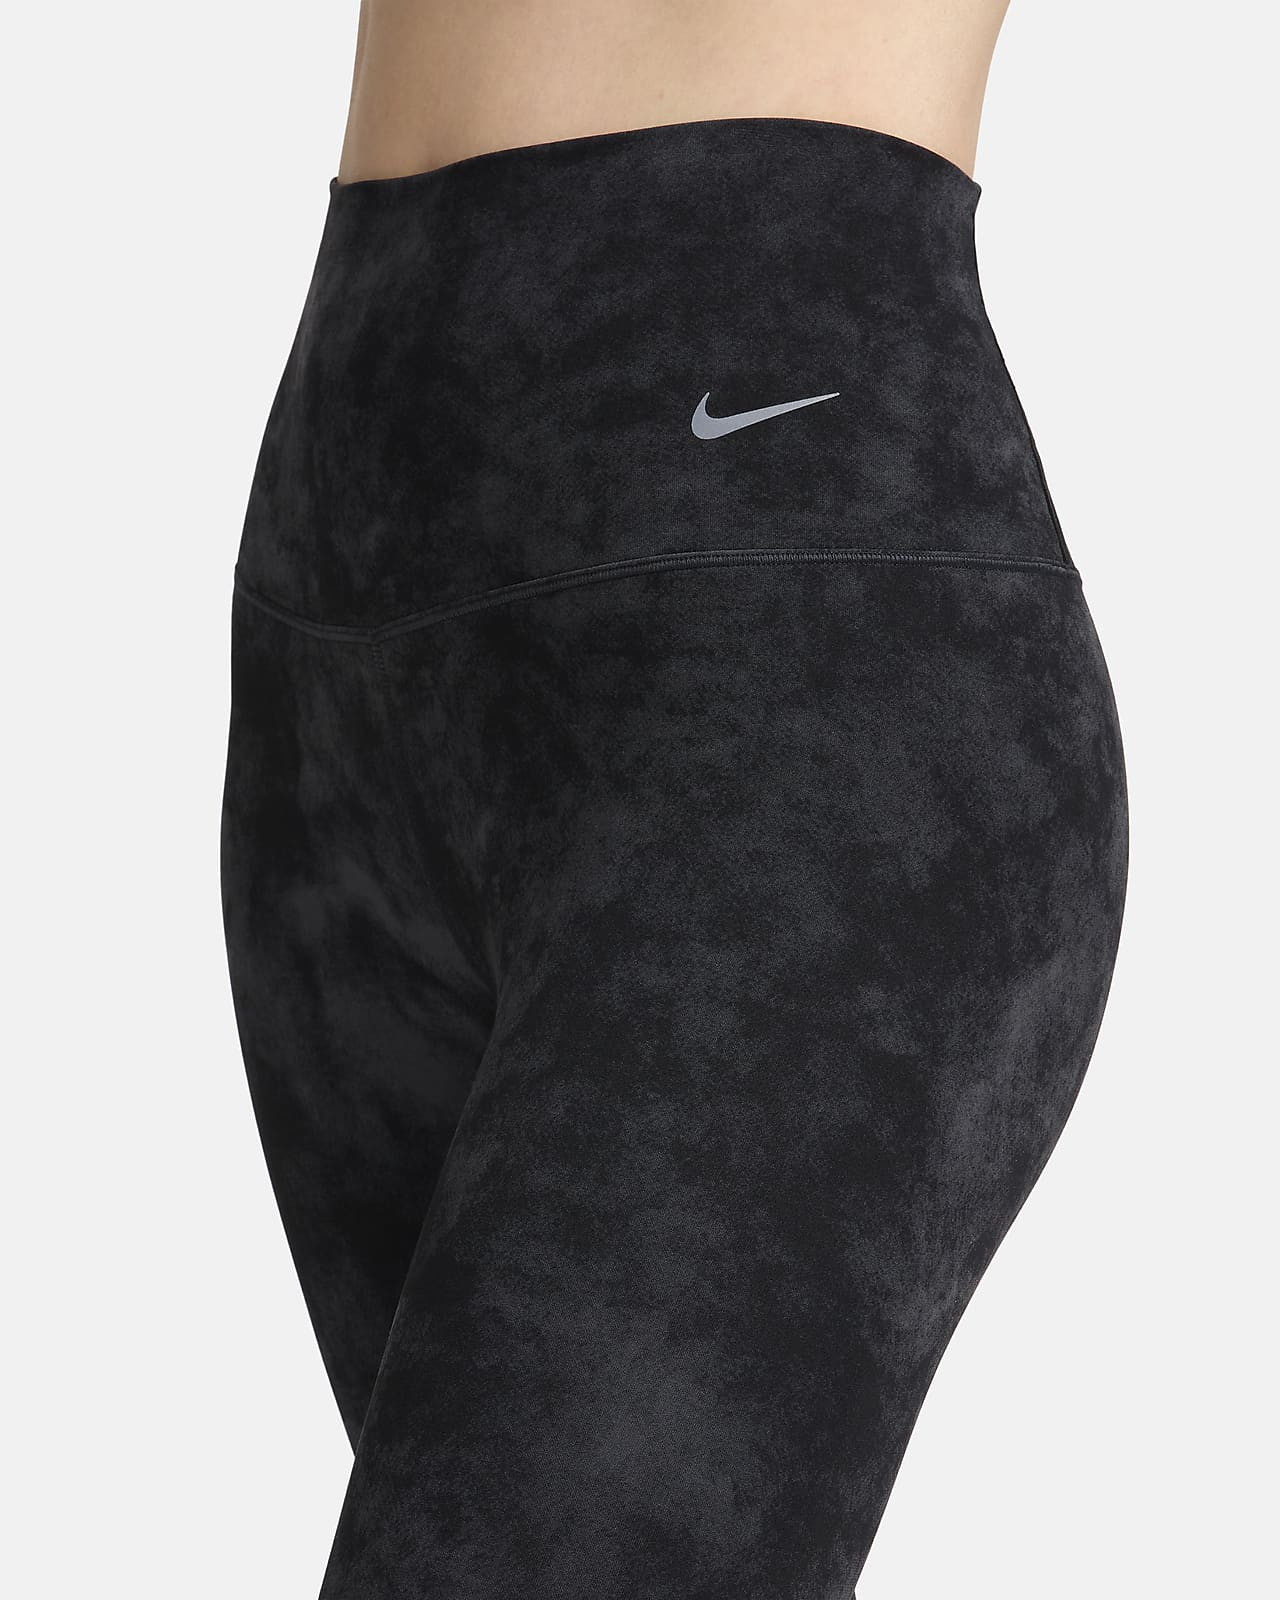 Legging 7/8 woman Nike Dri-Fit Zenvy HR - Baselayers - Textile - Handball  wear